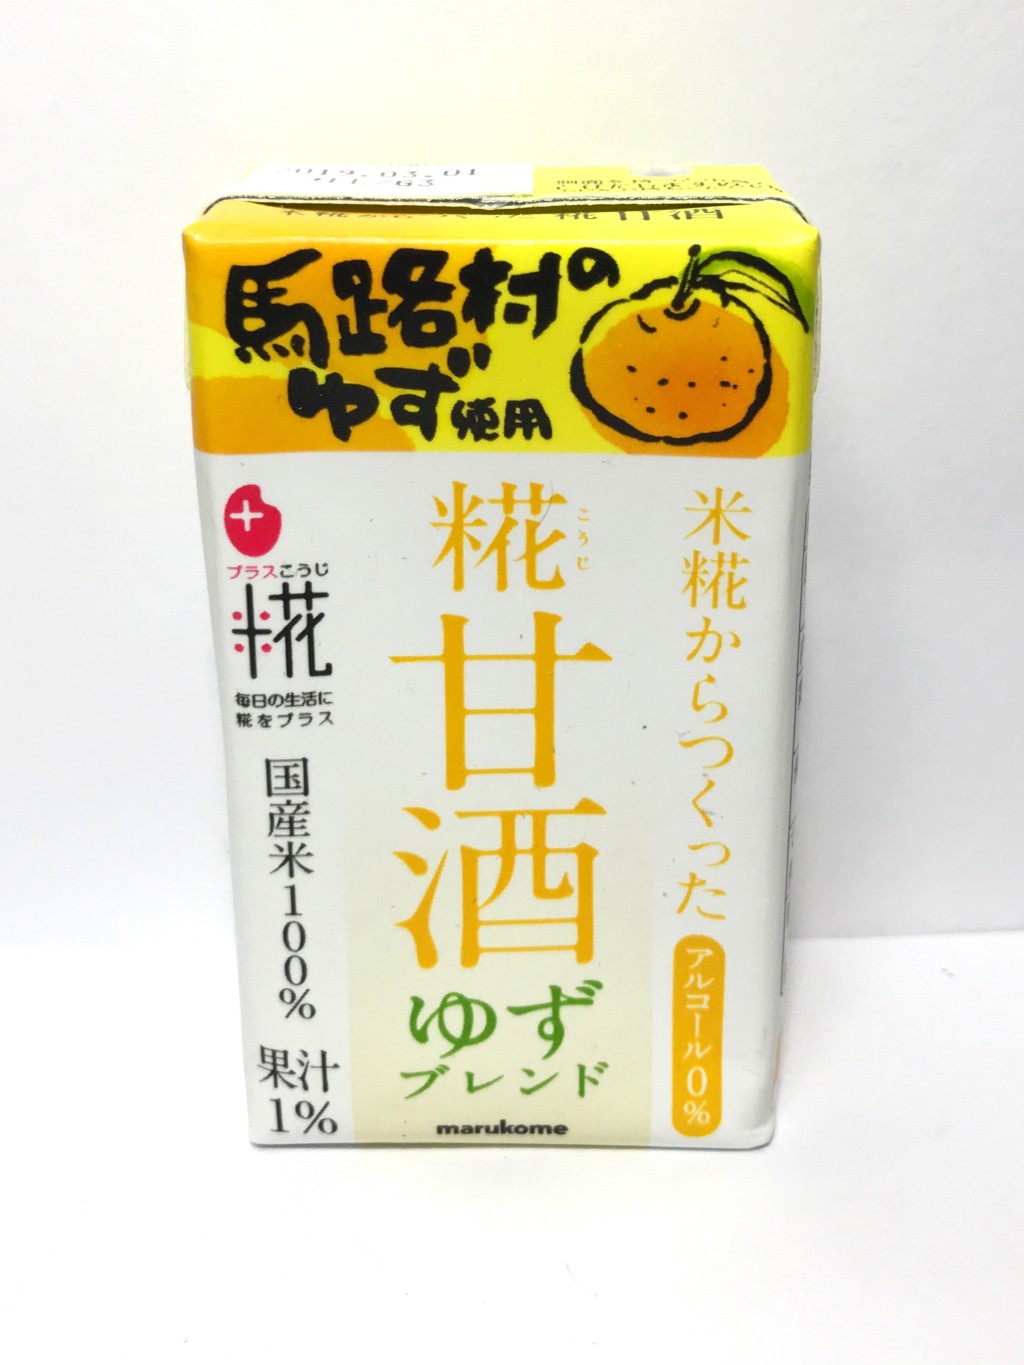 マルコメの柚子果汁を添加した米麹甘酒『糀甘酒ゆずブレンド』